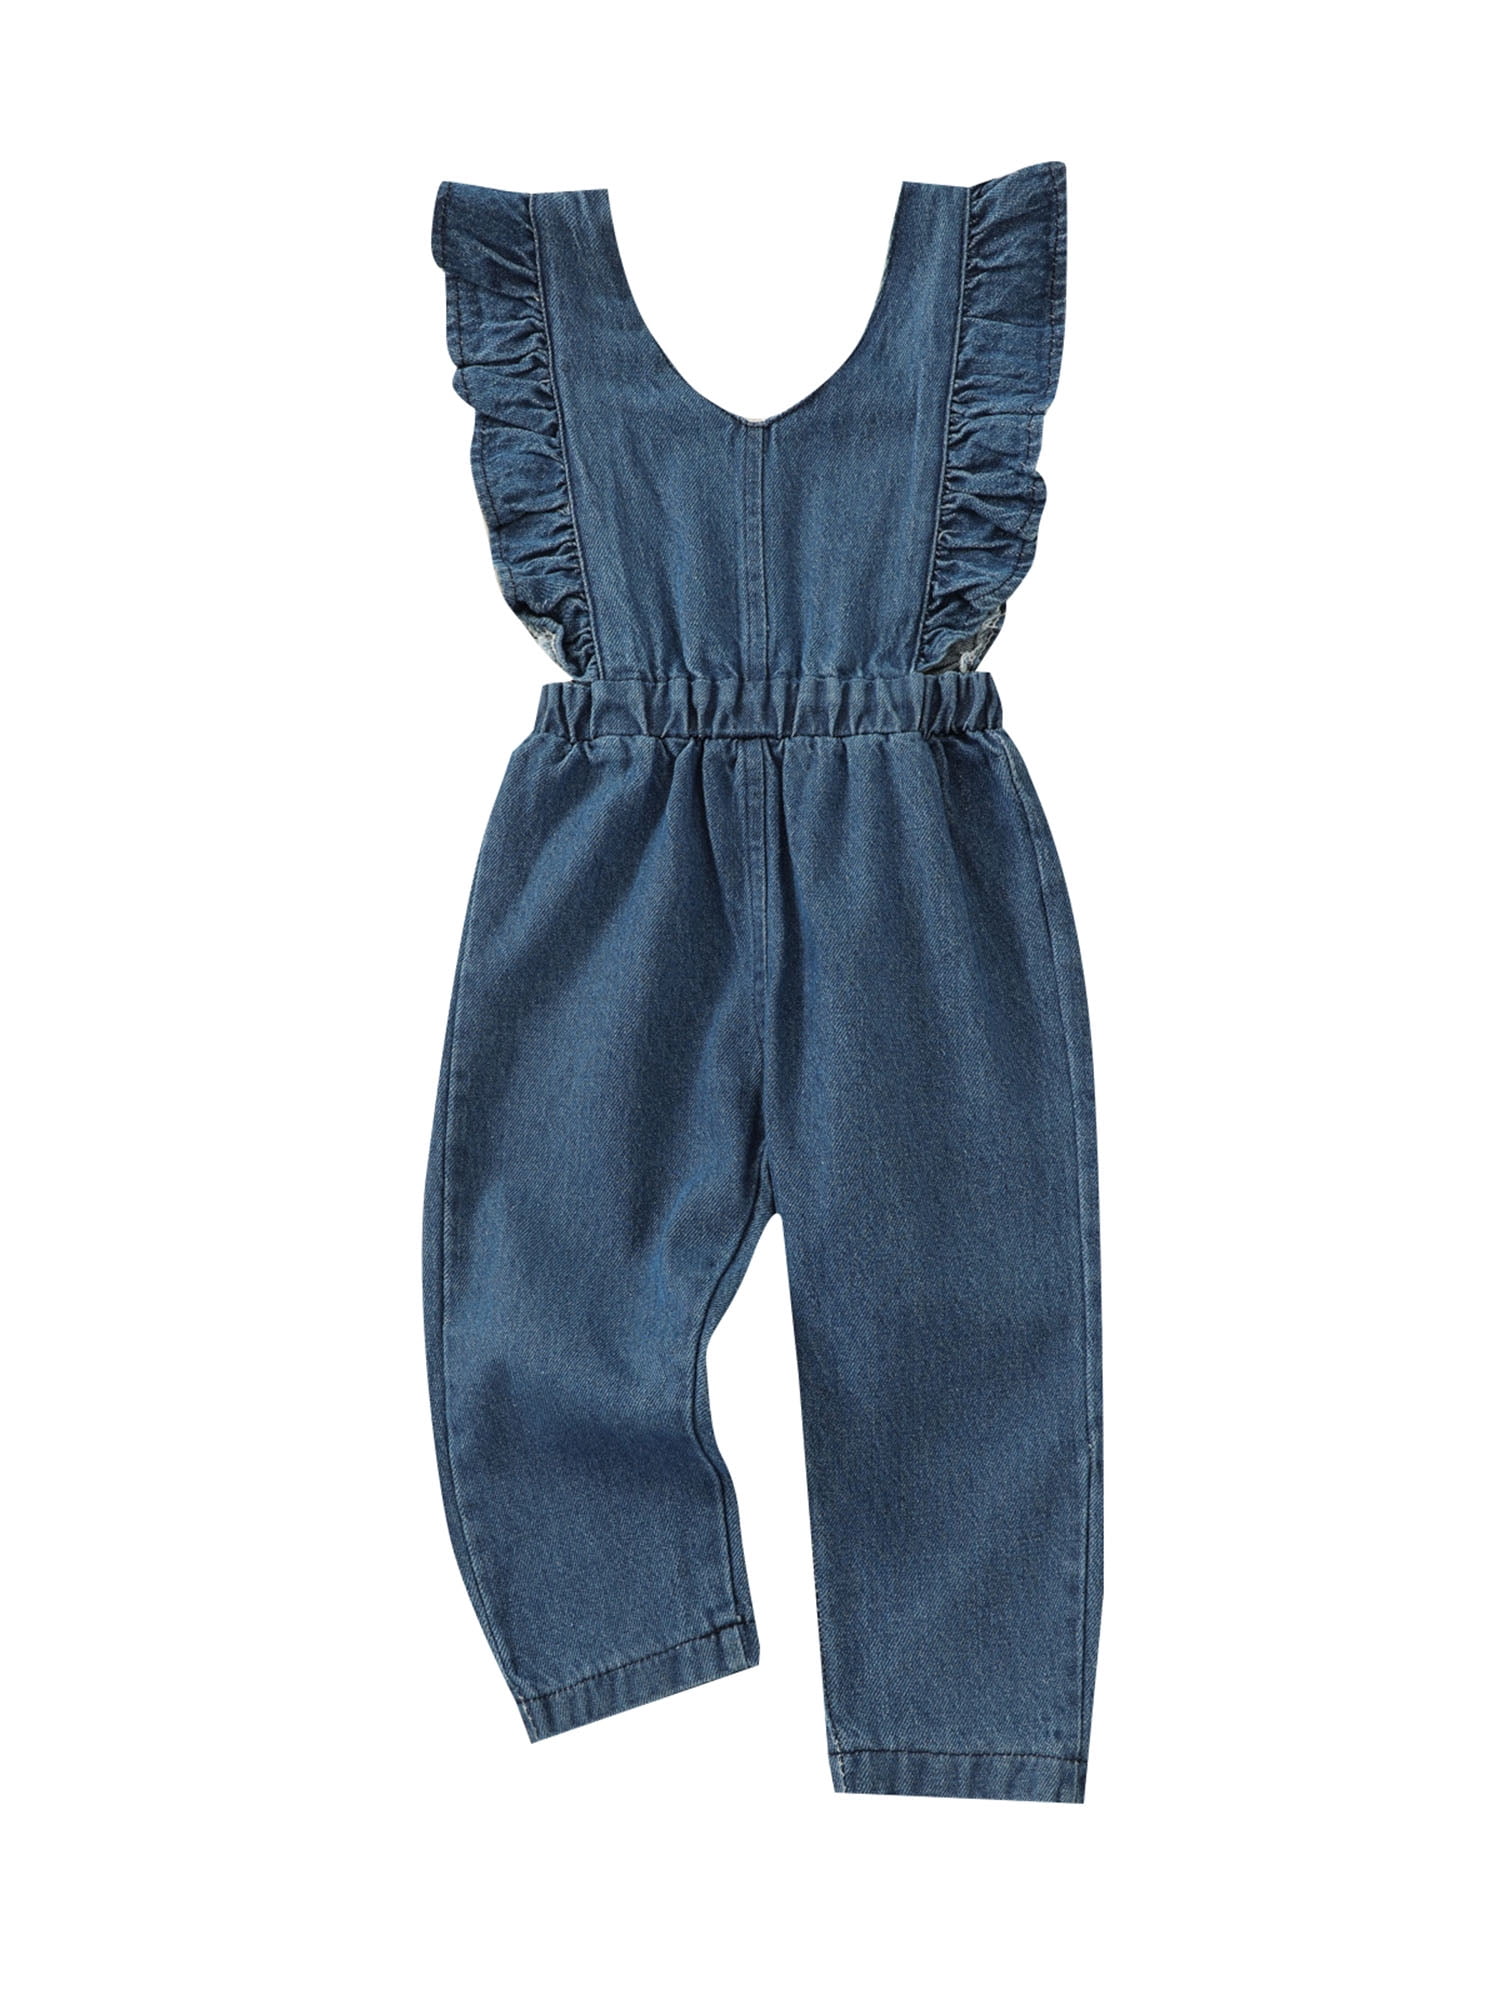 Toddler Baby Girls Denim Sleeveless Dress Kids Summer Casual Ruffle Jeans Dress